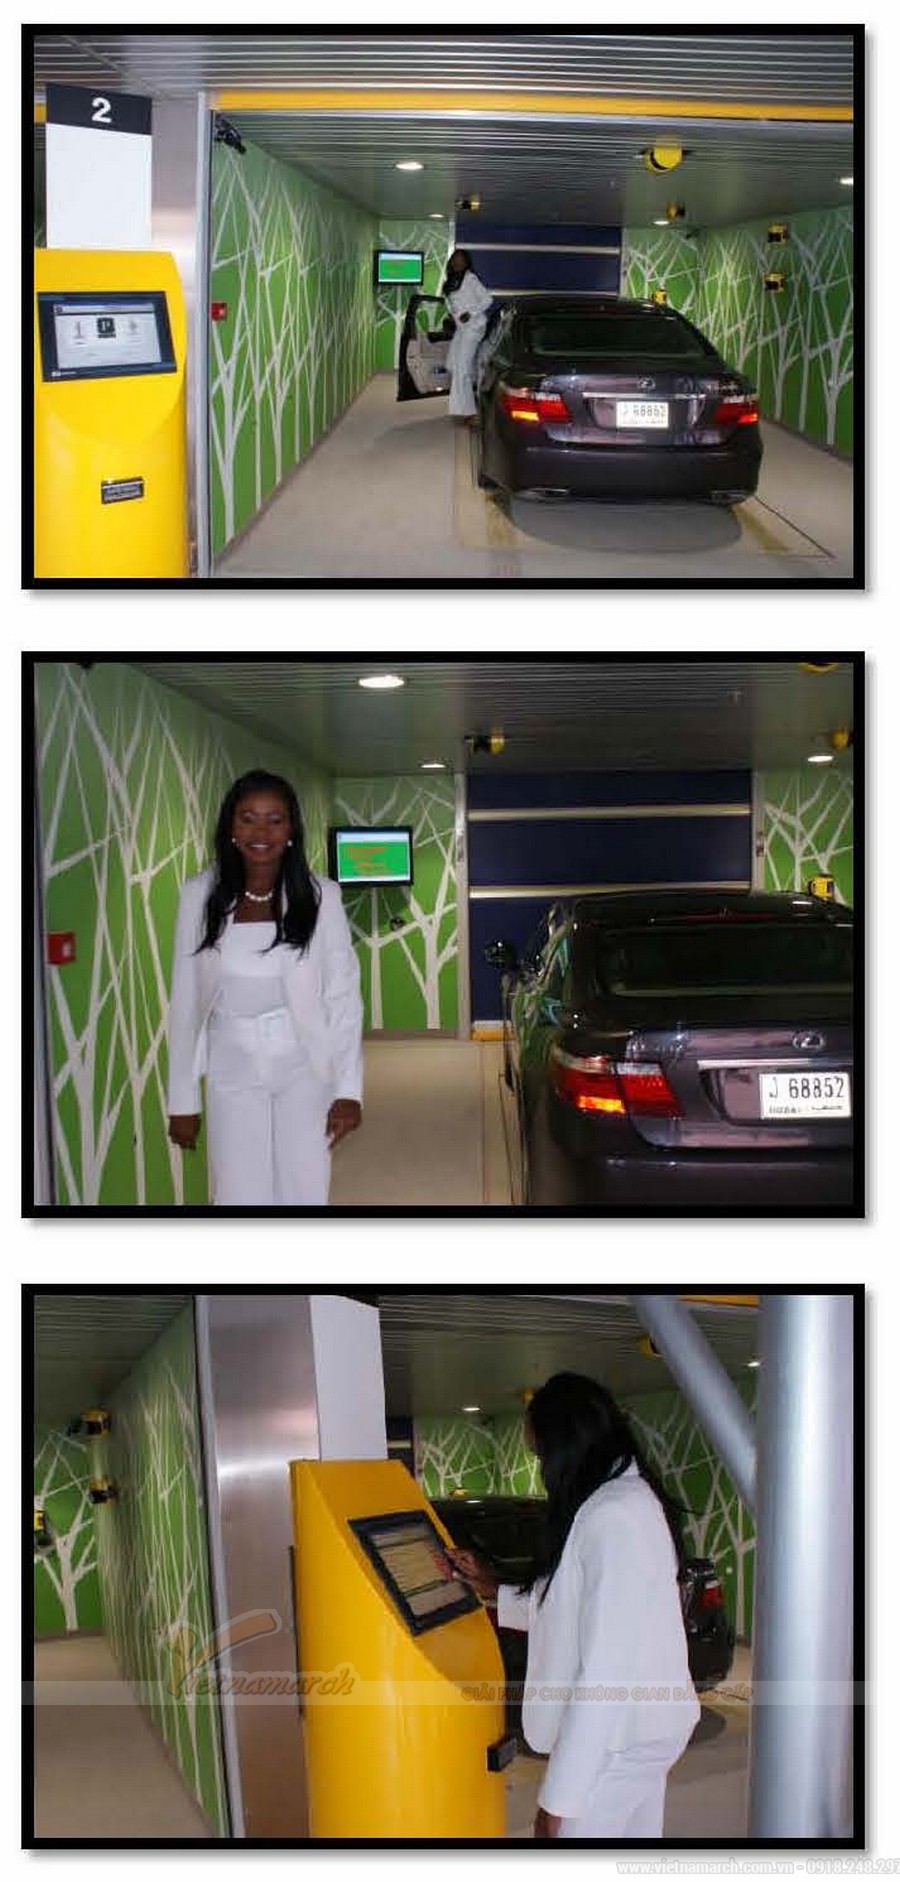 Dubai đã có bãi đỗ xe thông minh tự động như thế này từ năm 2009 > Dubai đã có bãi đỗ xe thông minh tự động như thế này từ năm 2009